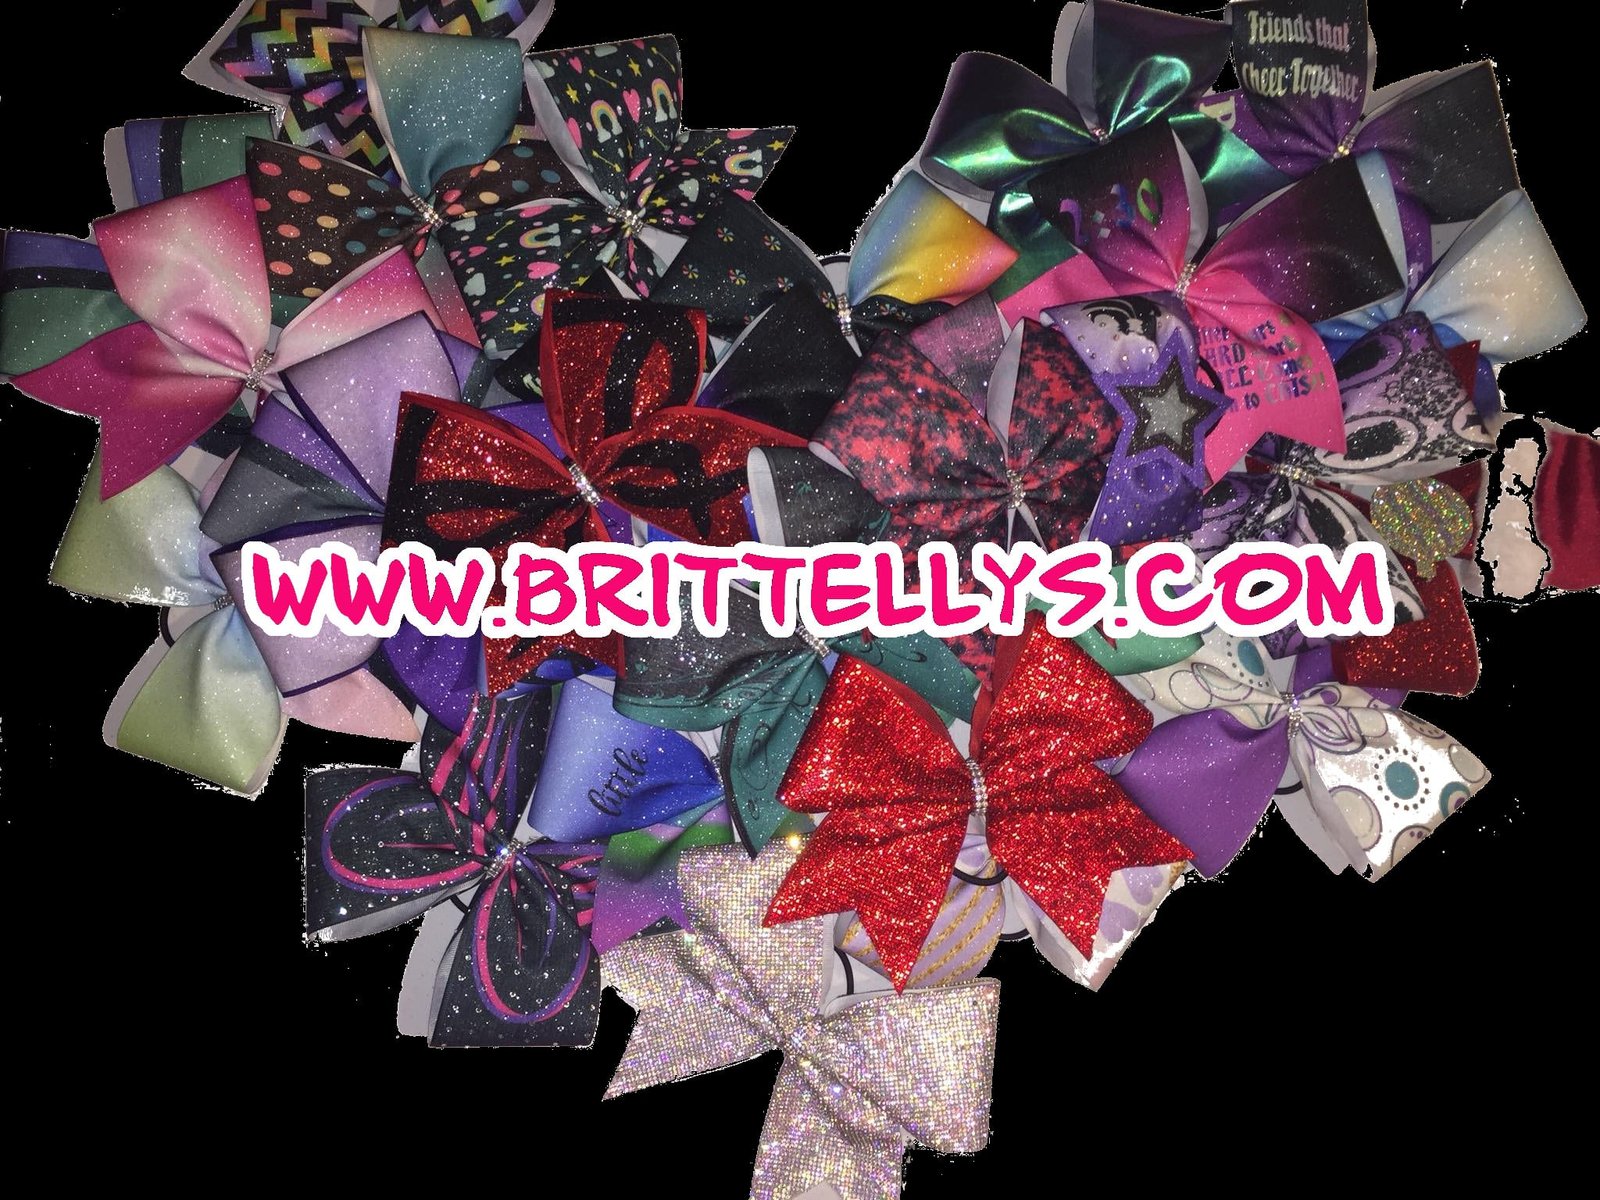 Rhinestone Dolly Bow, newest bow trend ⋆ Brittelly's